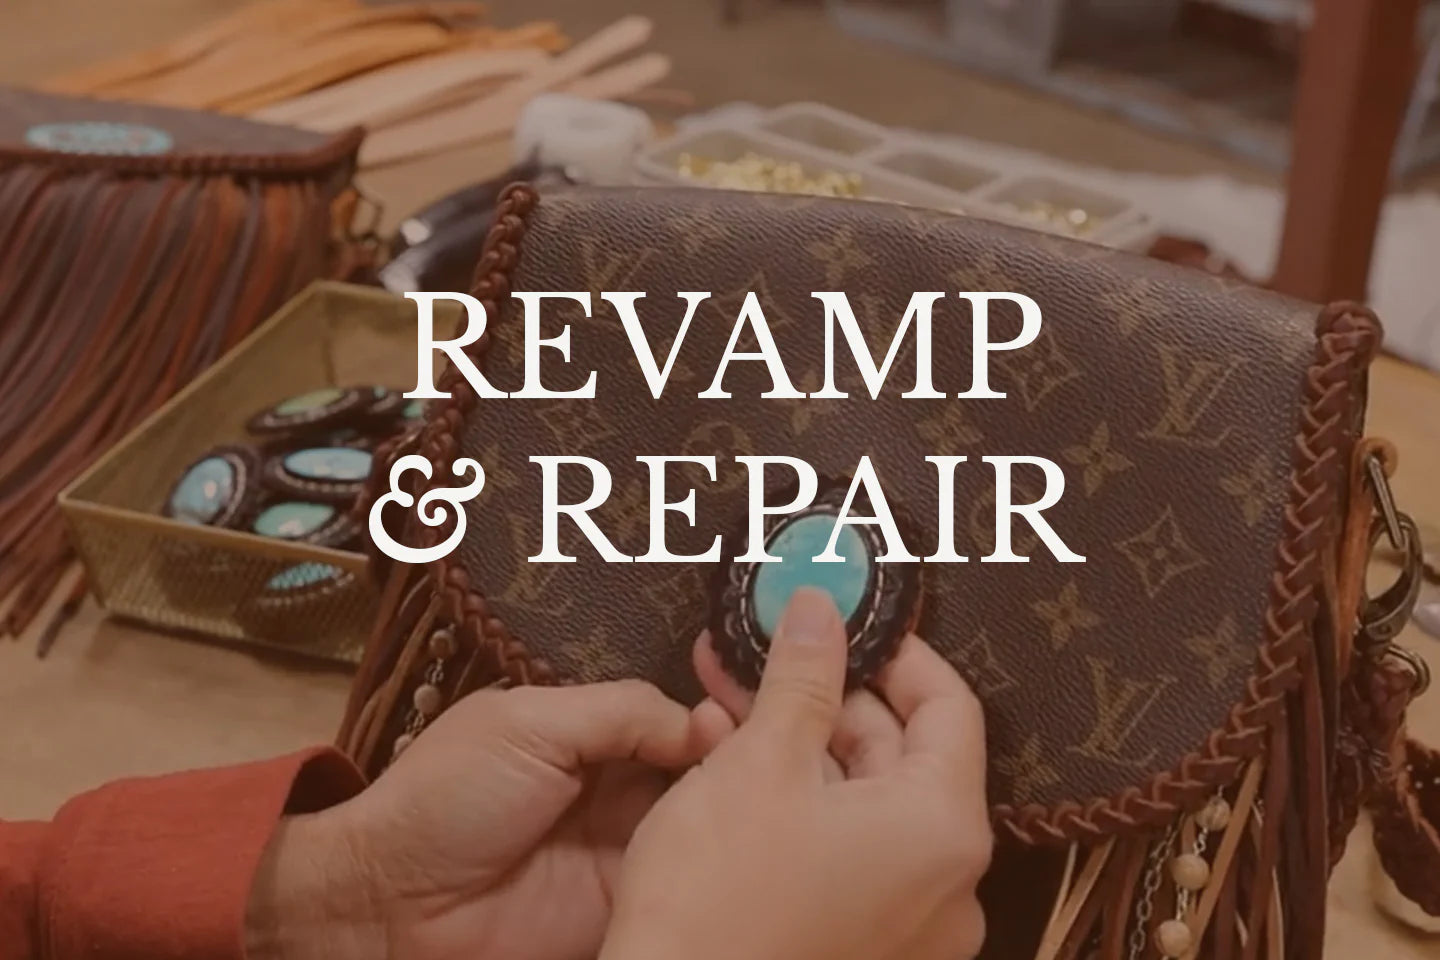 Louis Vuitton Repair Service